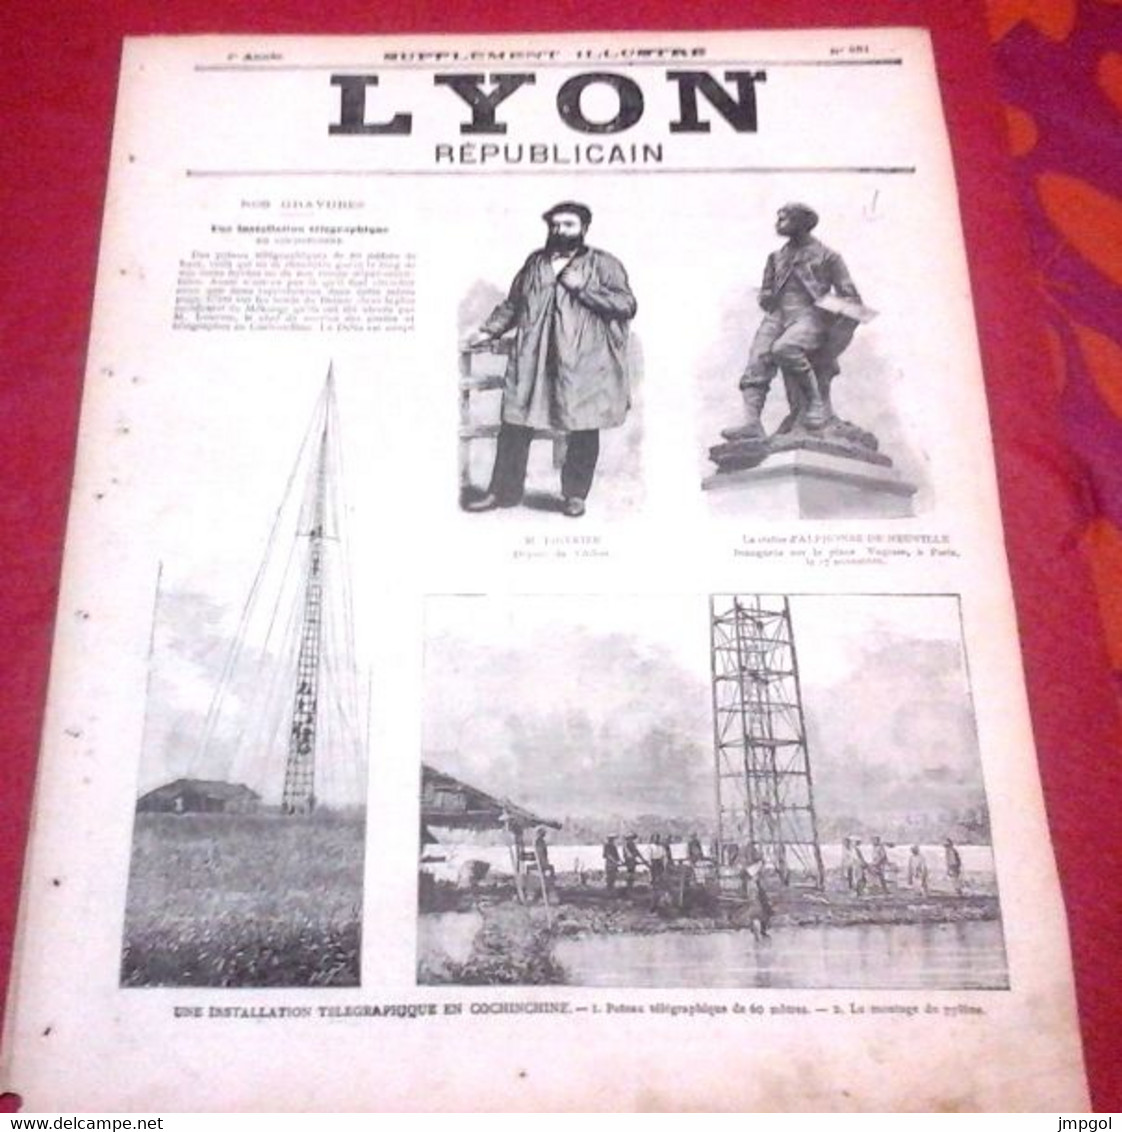 Lyon Républicain Supplément Illustré N°461 1889 M. Thivrier Député Allier Montluçon Commentry,Télégraphe Cochinchine - 1850 - 1899